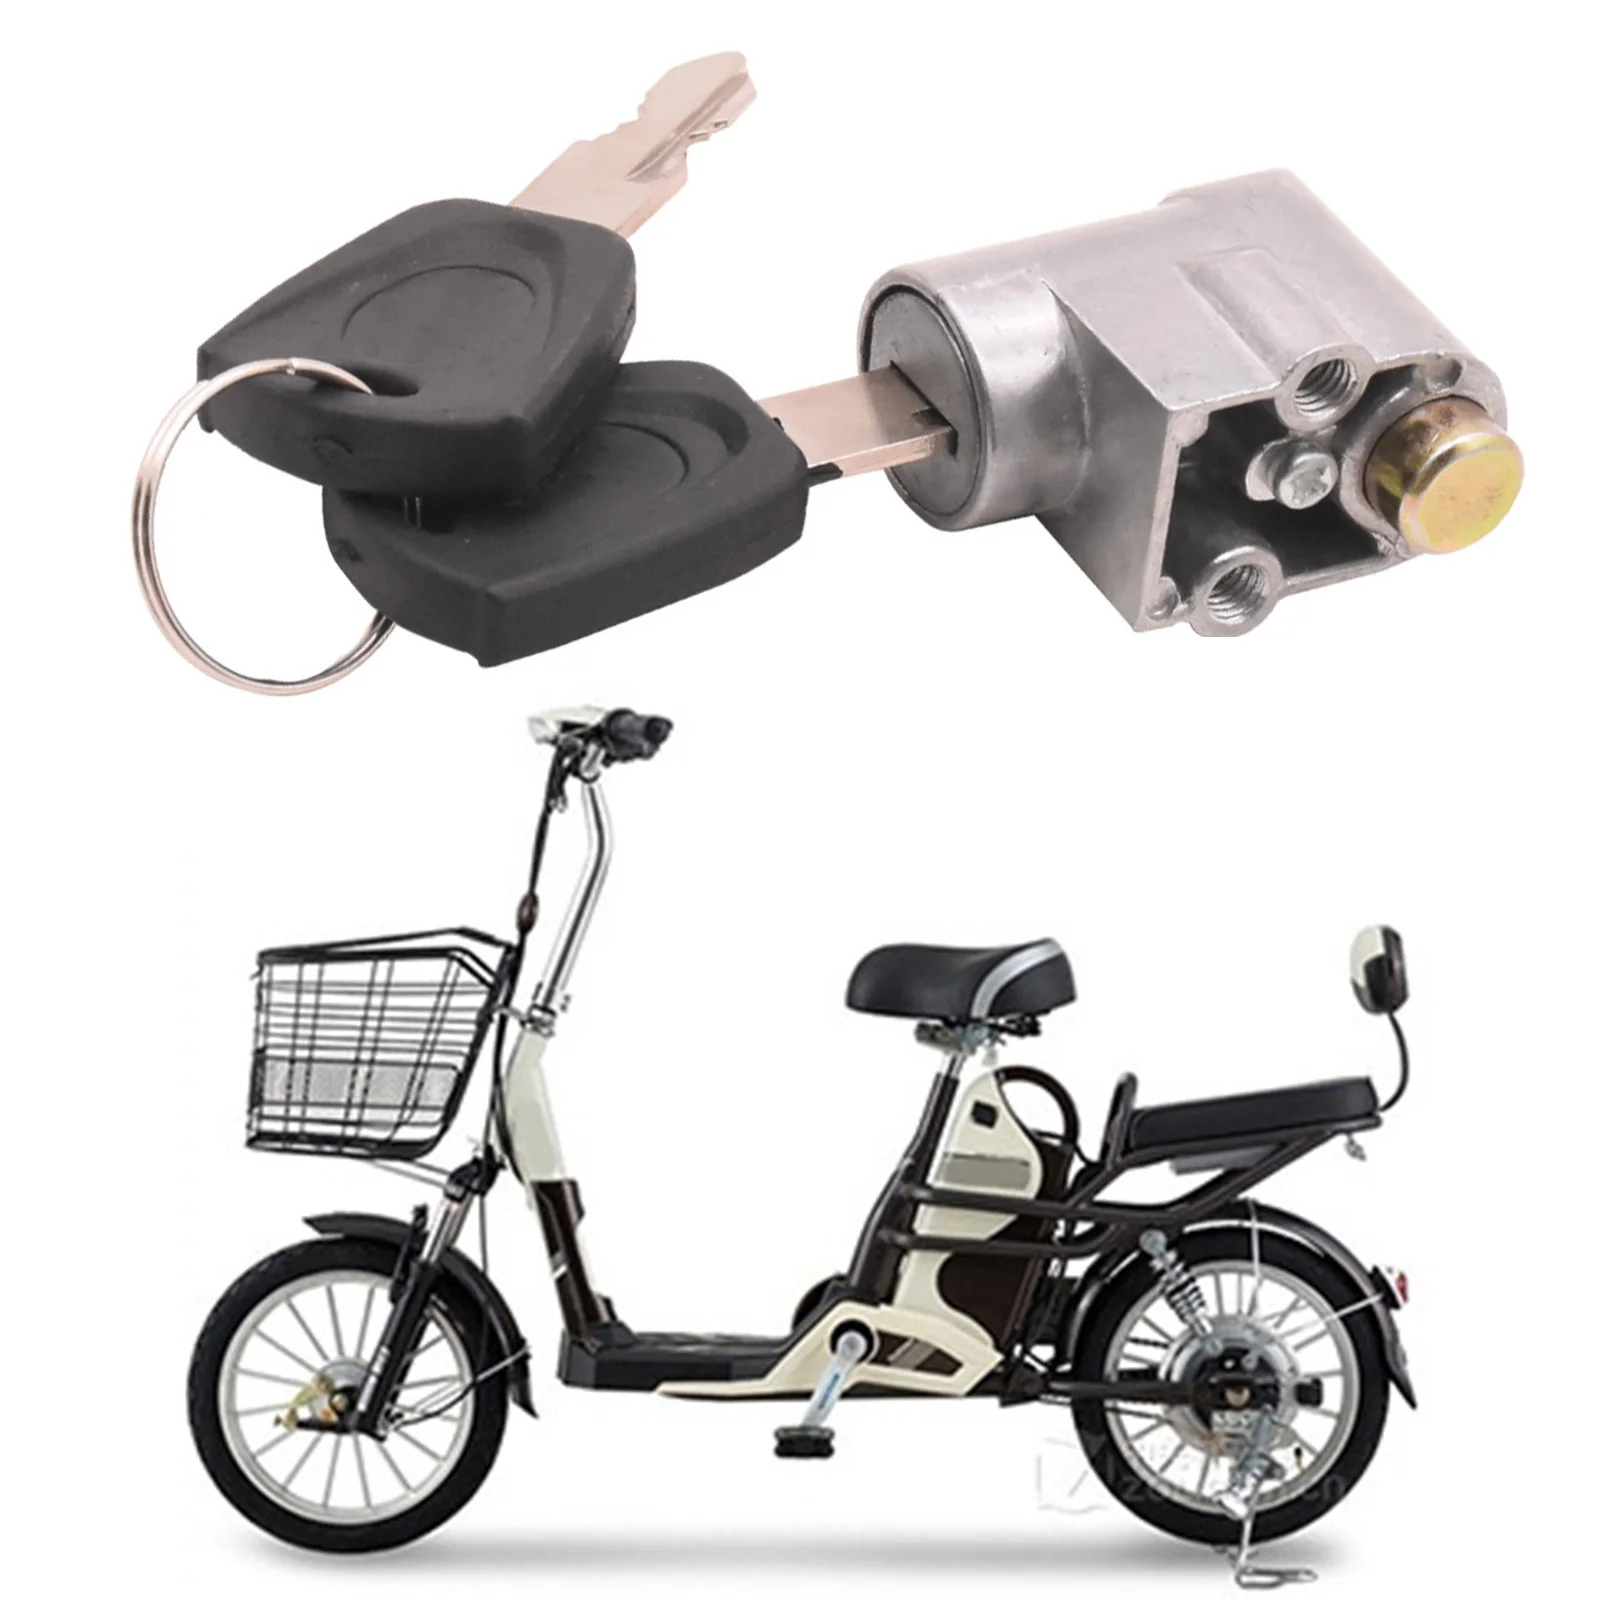 Ateşleme Kilidi Pil Güvenlik paketleme kutusu Kilidi + 2 Anahtar Motosiklet Elektrikli Bisiklet Scooter E-bisiklet Kilidi Anti-hırsızlık Kilidi Pil Kilidi